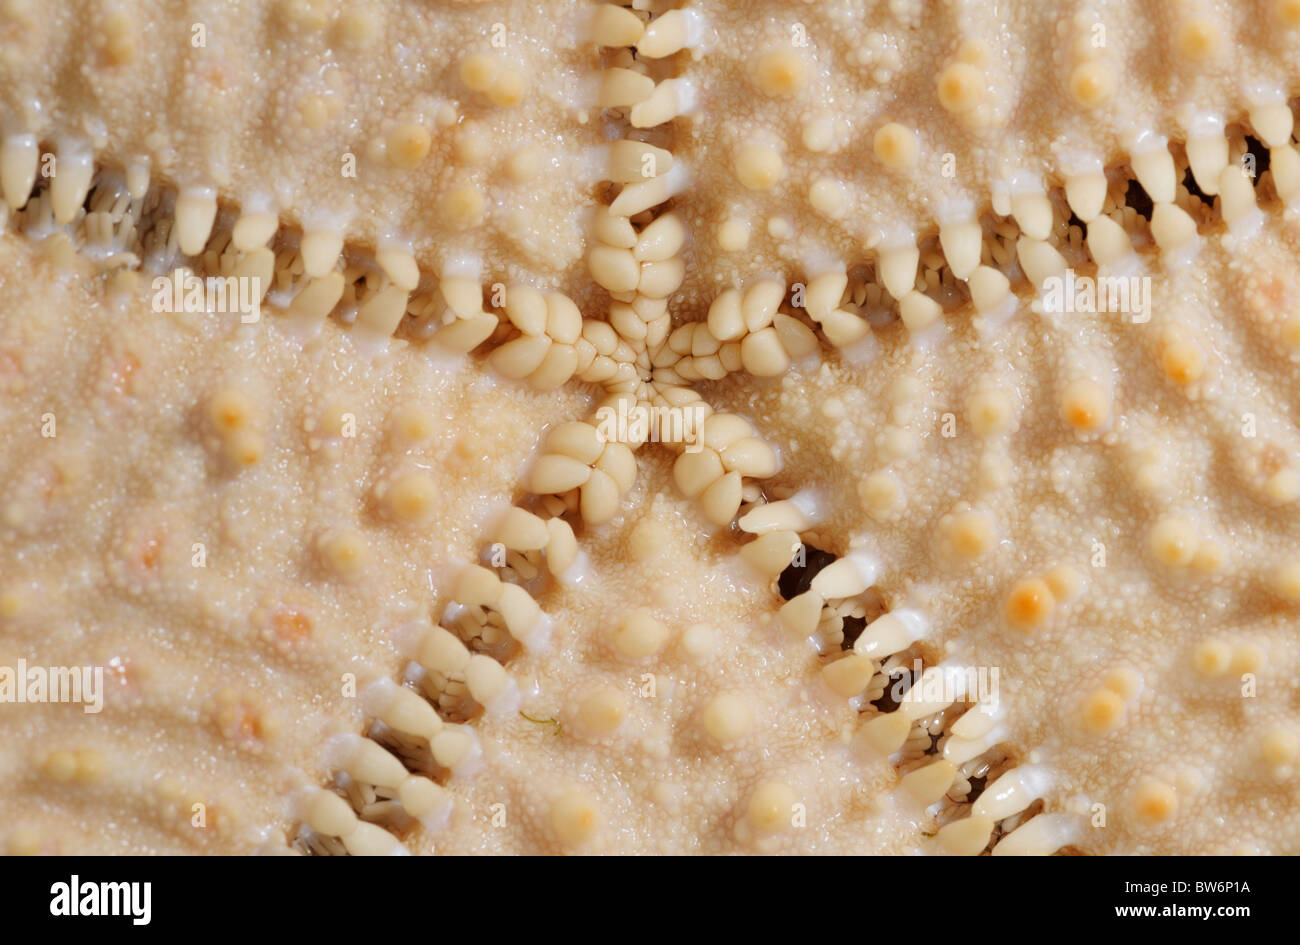 Parte inferior (oral) de la superficie de una estrella de mar (acolchado rojo estrella, Oreaster reticulatis) mostrando los pies de tubo y simetría radial Foto de stock